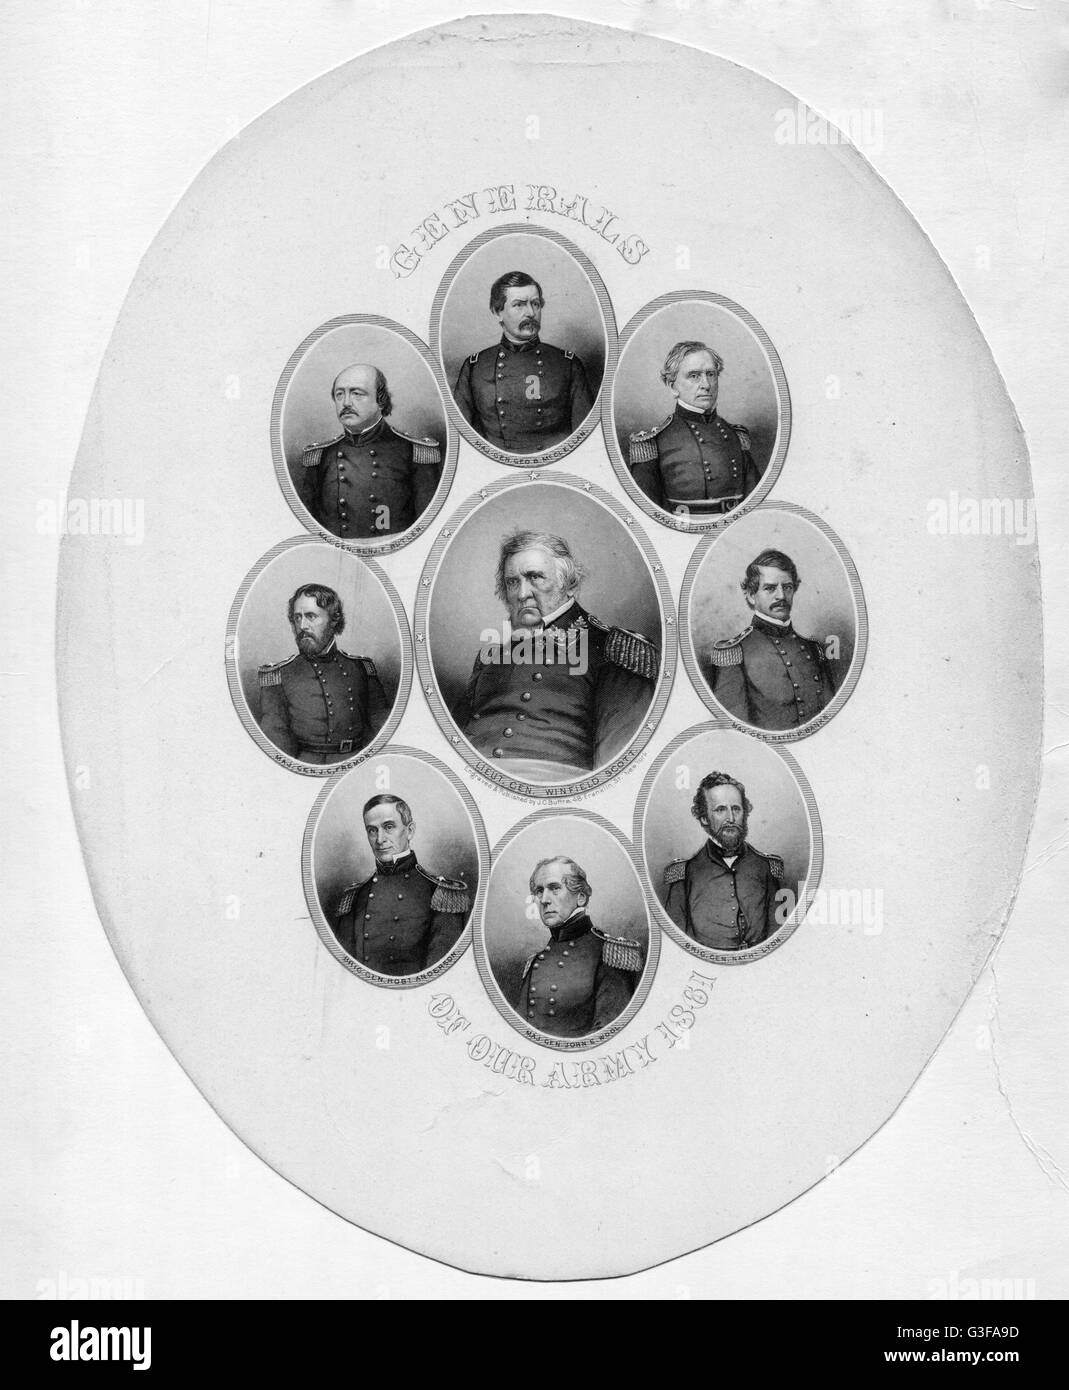 Generäle der Union Army - von oben im Uhrzeigersinn: McClellan, Dix, Banken, Lyon, Wolle, Anderson, Fremont, Butler. Mitte: Winfield Scott. Stockfoto